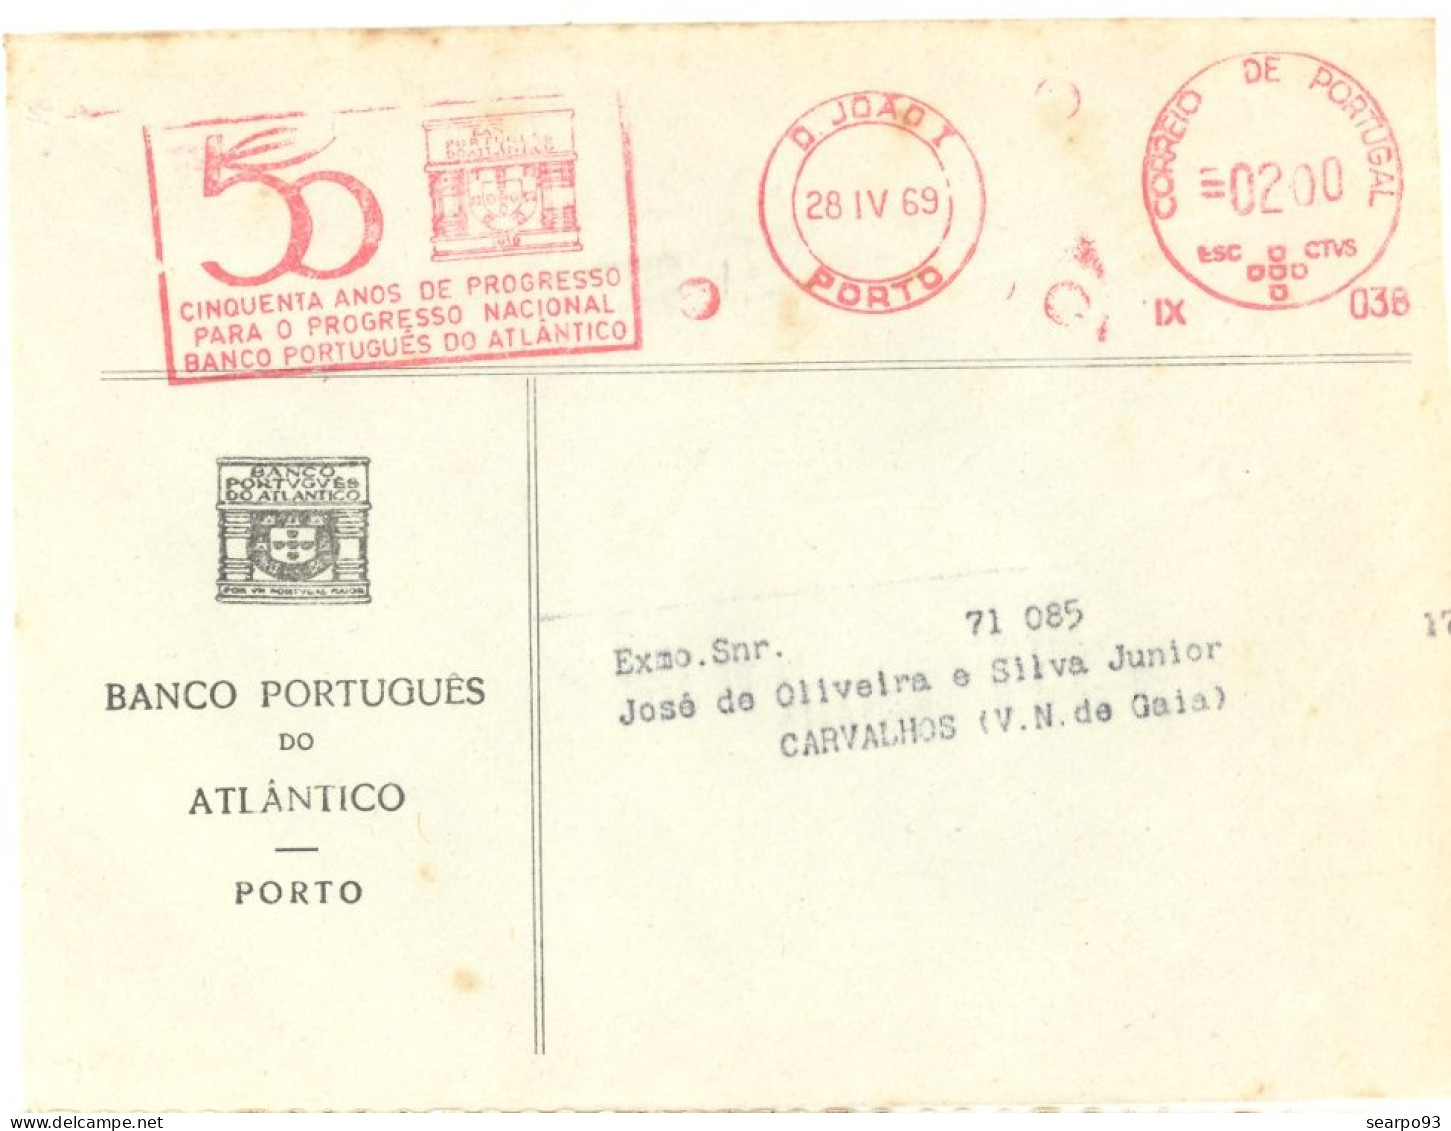 PORTUGAL. METER SLOGAN. 50th ANNIV. BANCO PORTUGUES DO ATLANTICO. BANK. PORTO. 1969 - Marcophilie